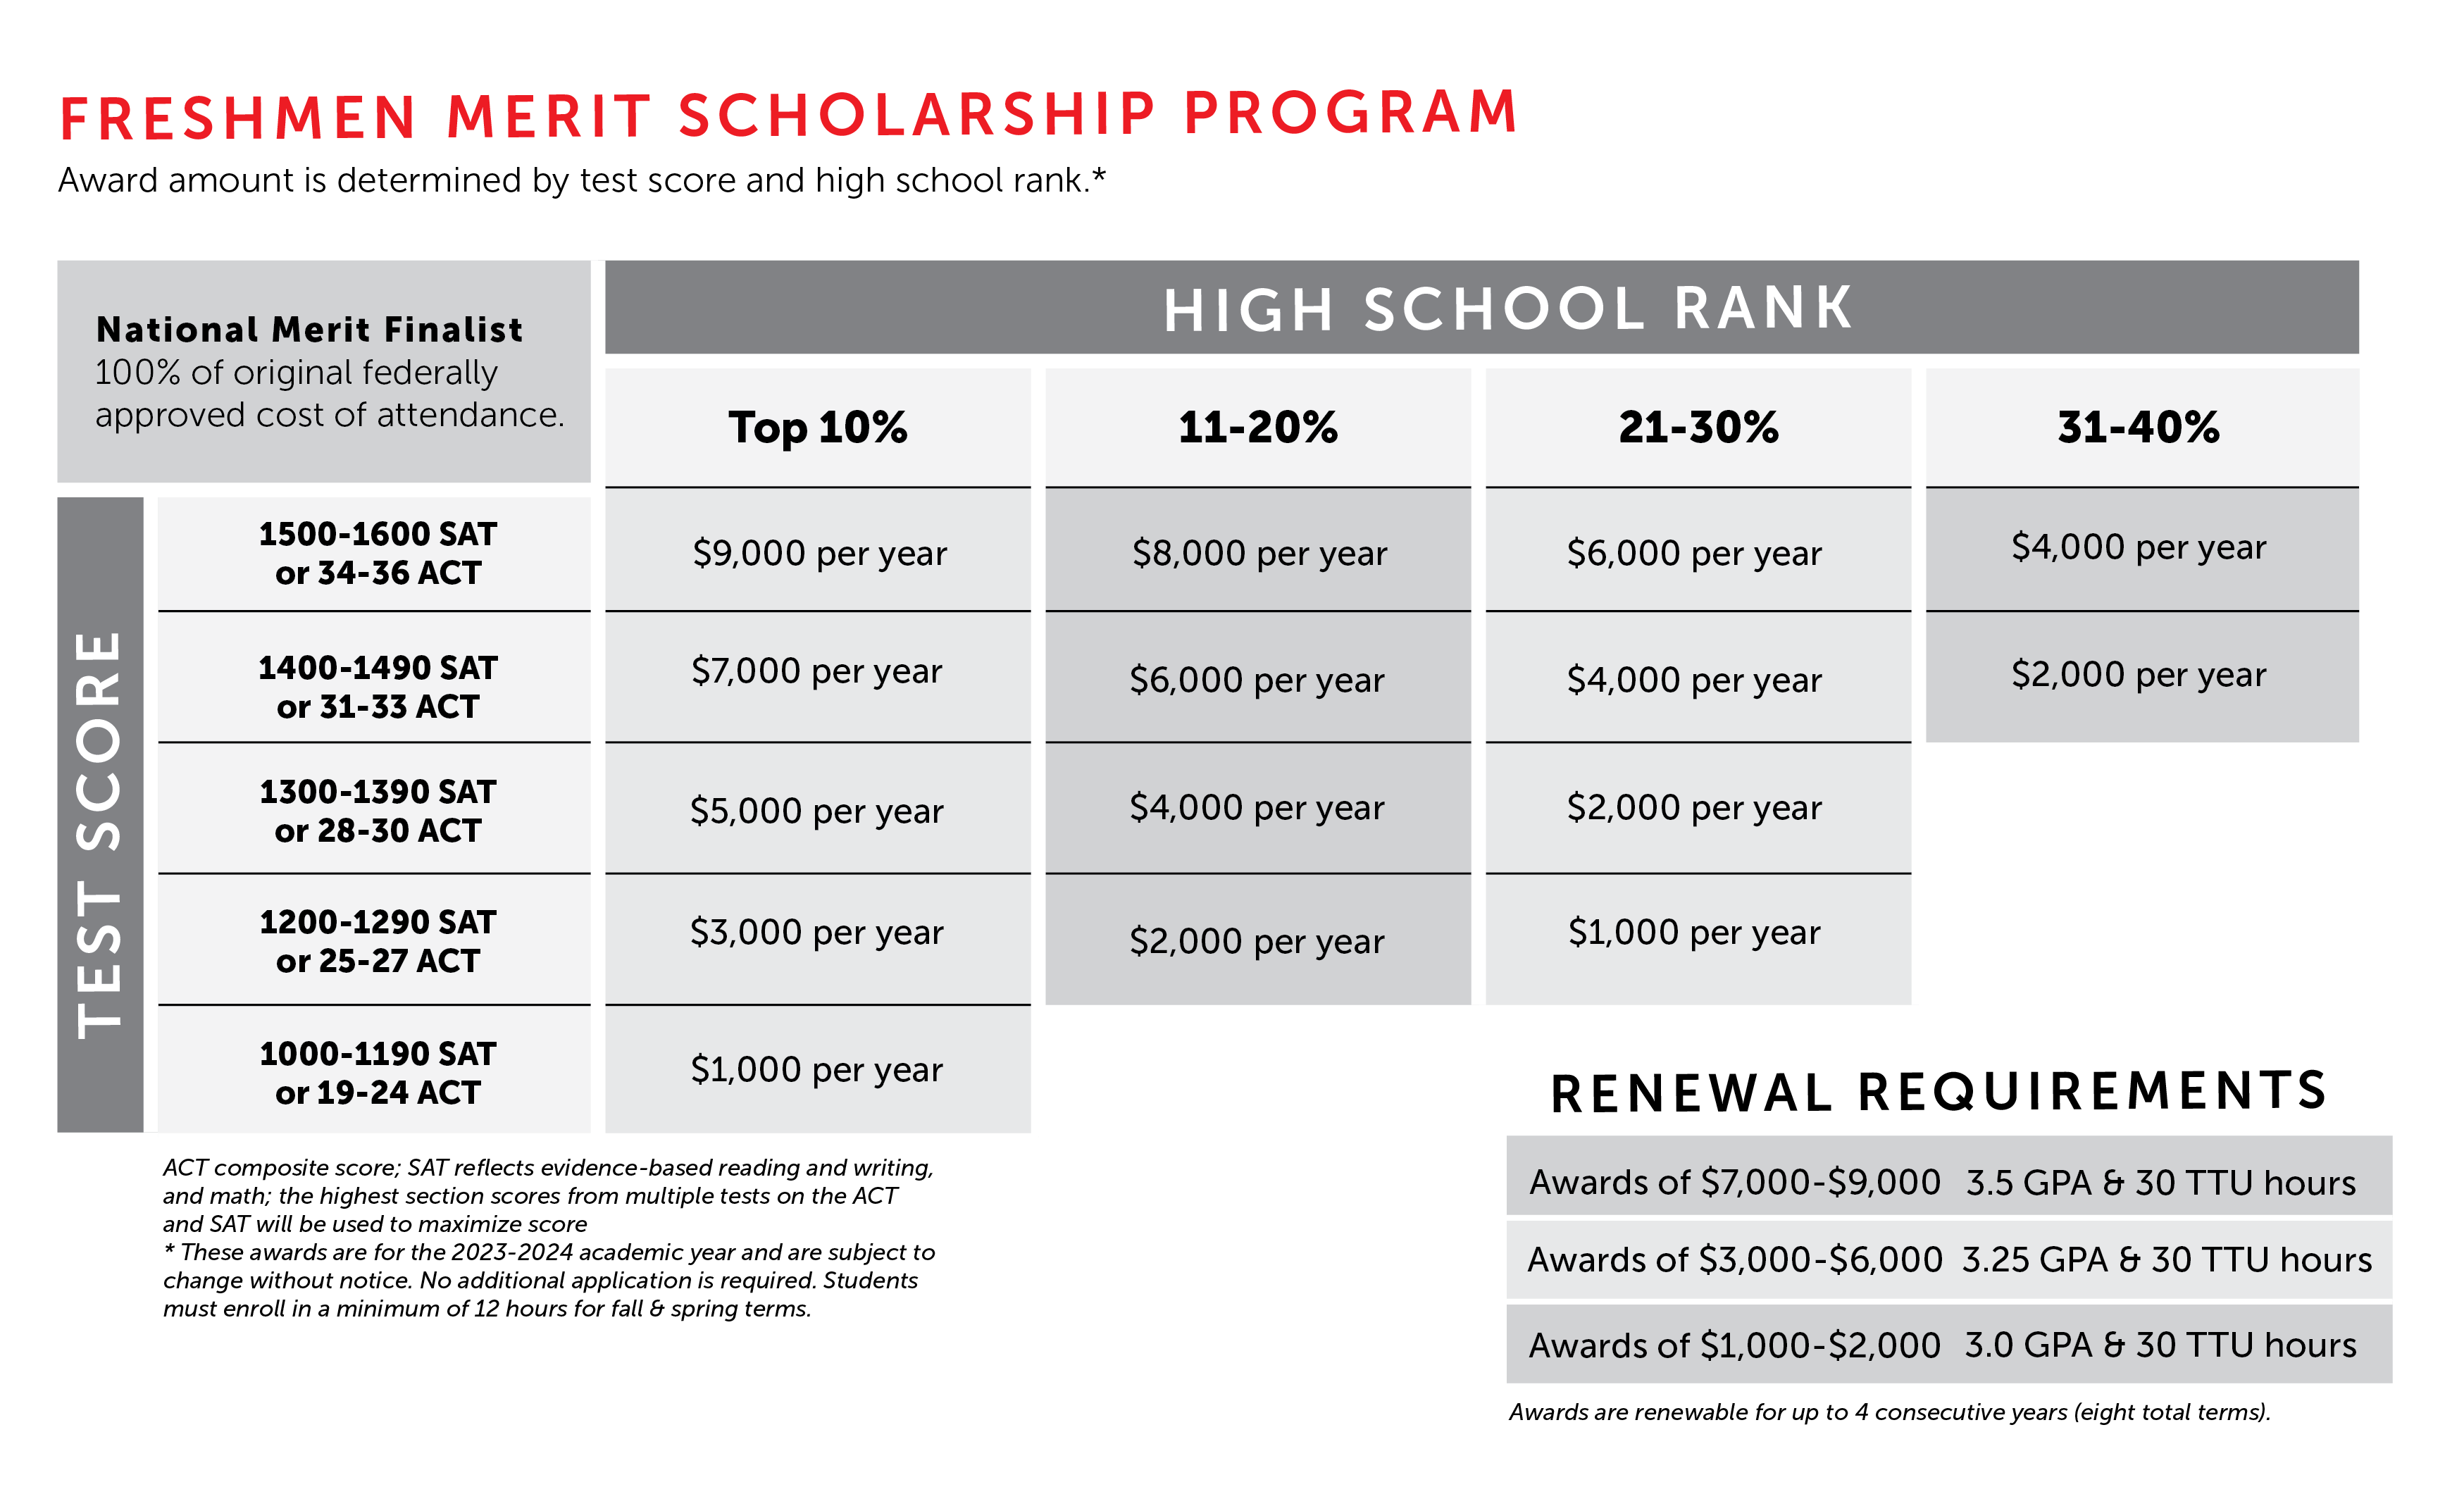 Freshmen Merit Scholarship